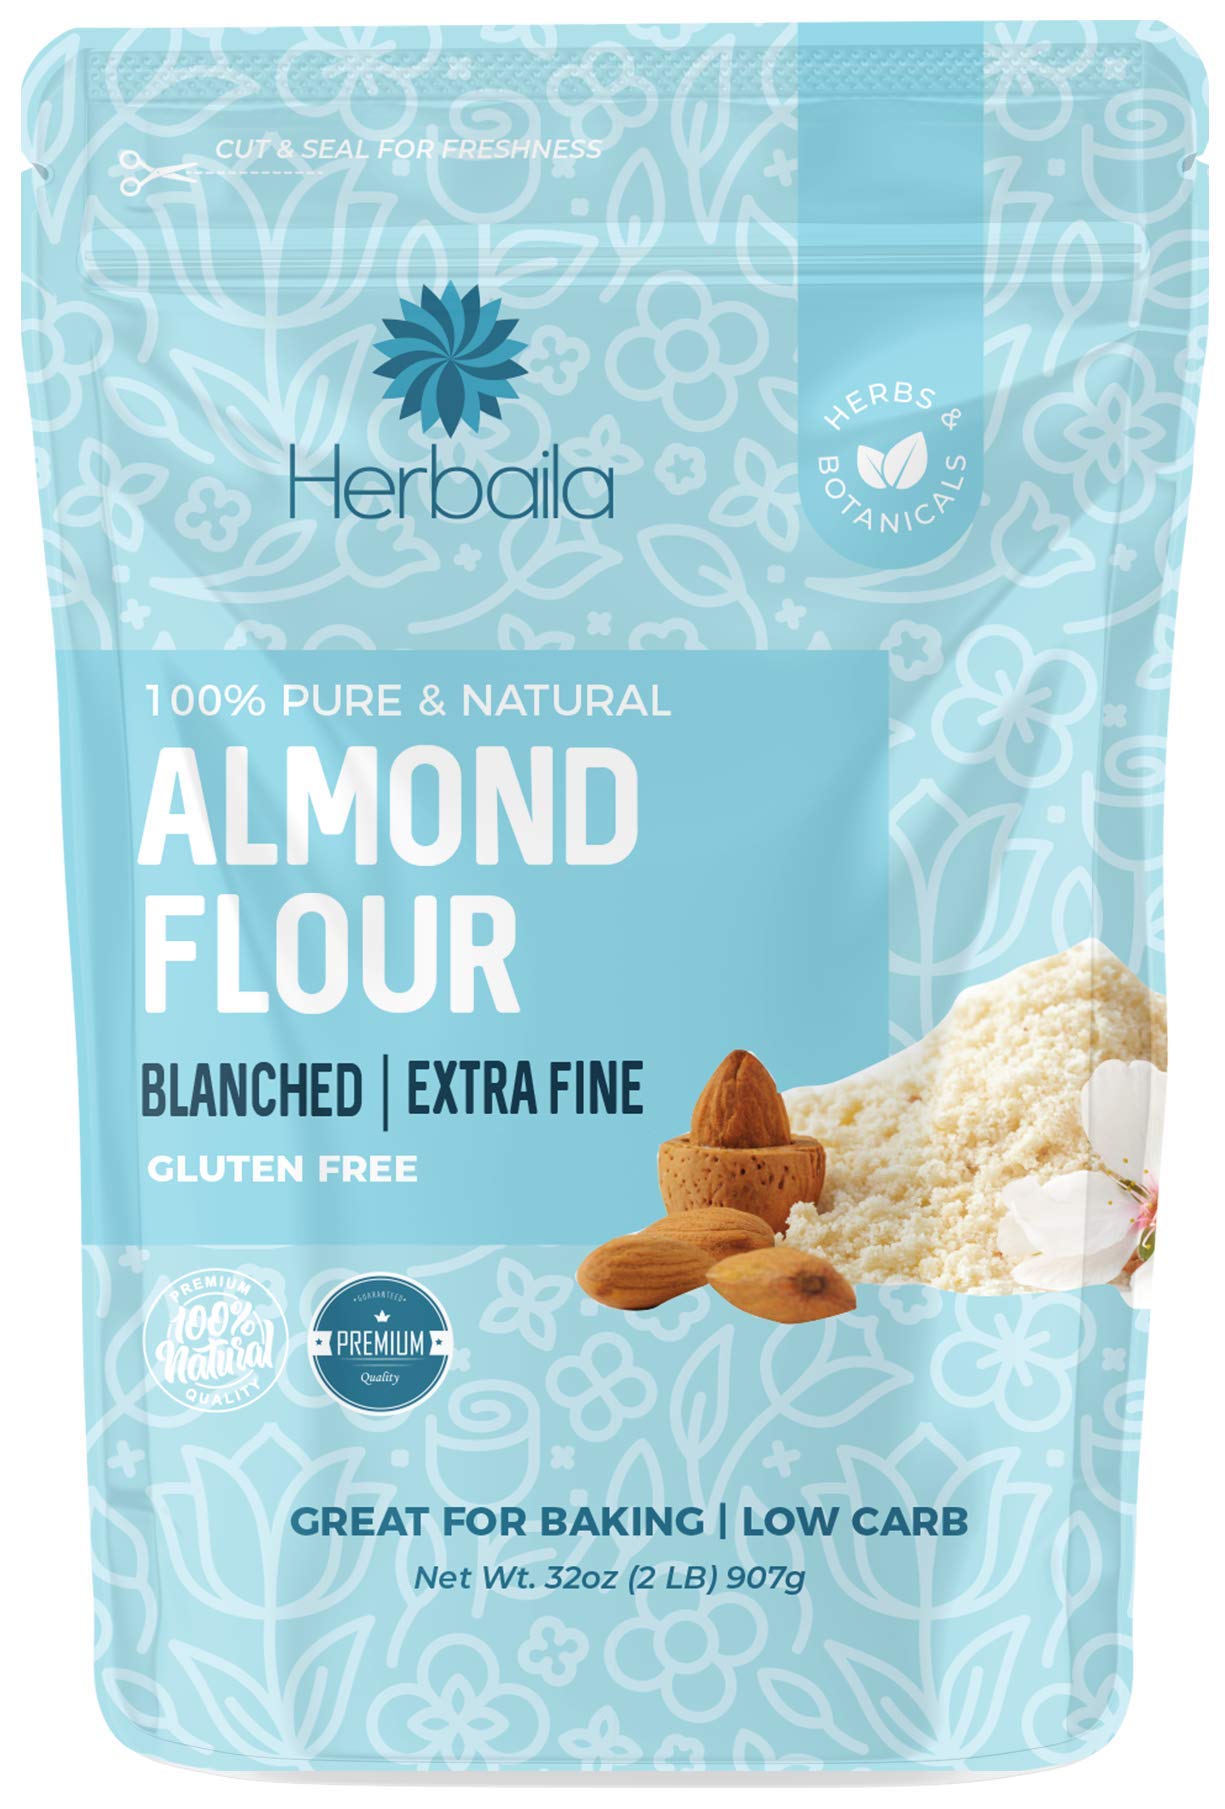 Herbaila Almond Flour